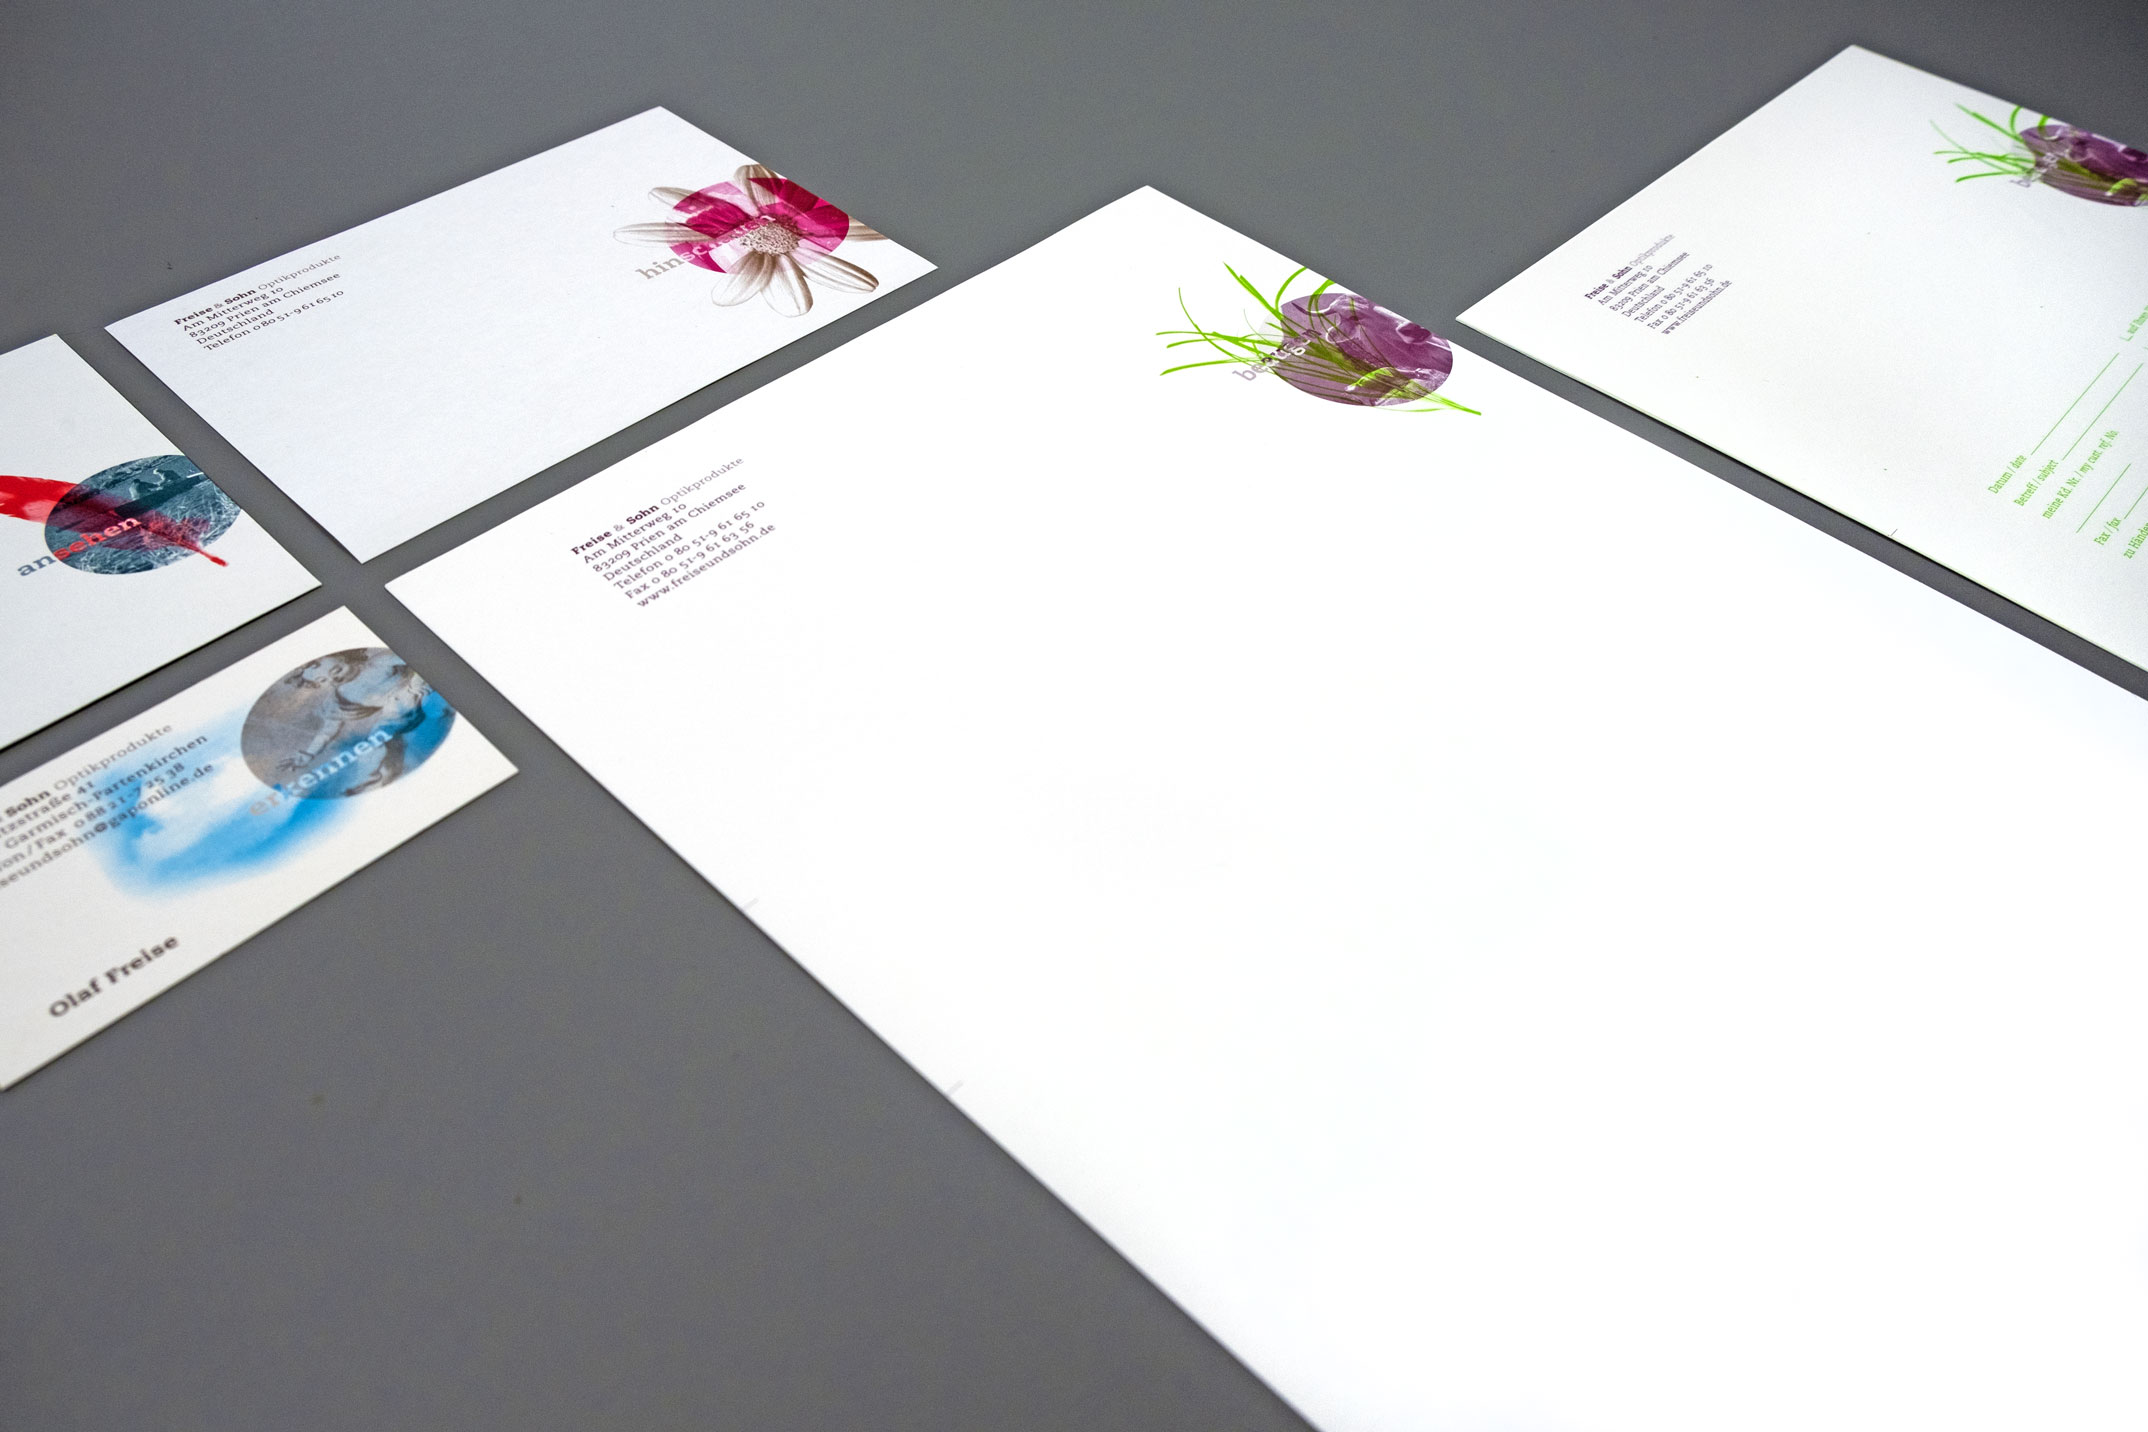 Briefausstattung mit Briefpapier, Visitenkarte, Kurzmitteilung, Briefumschlag und Paketaufkleber – Corporate Design Freise & Sohn Optikprodukte